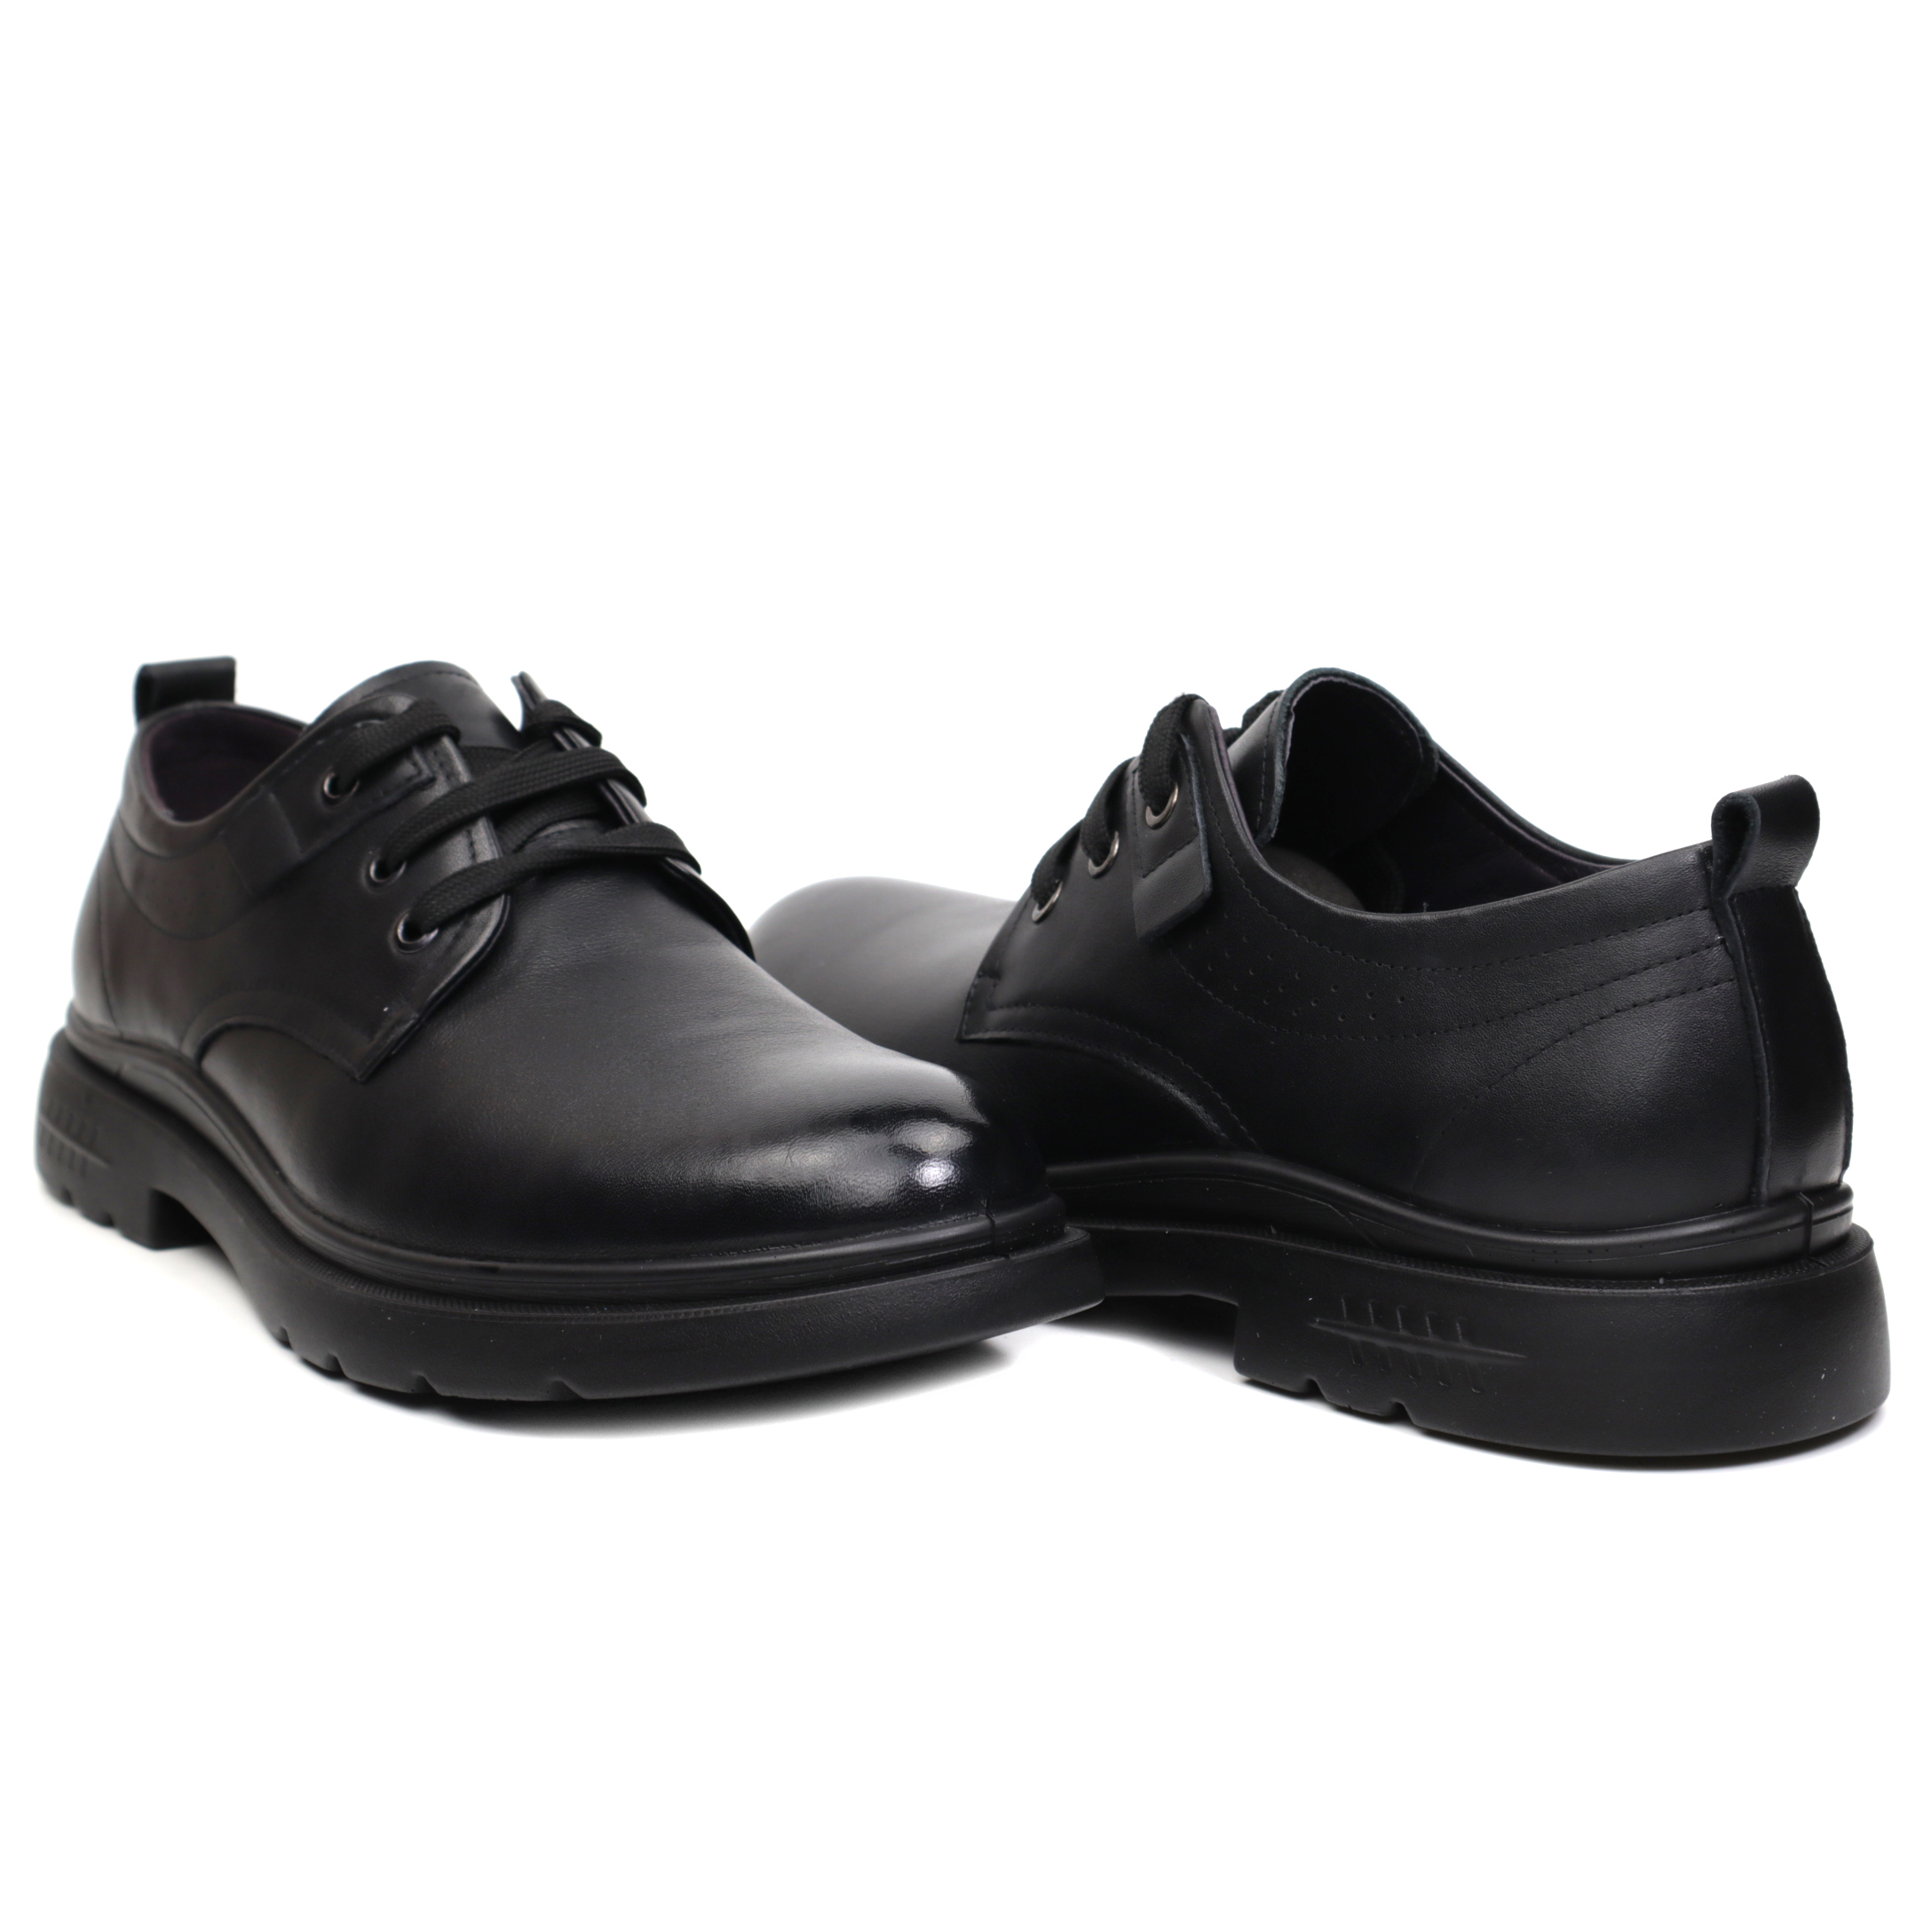 pantofi barbati JS3373 1 negru